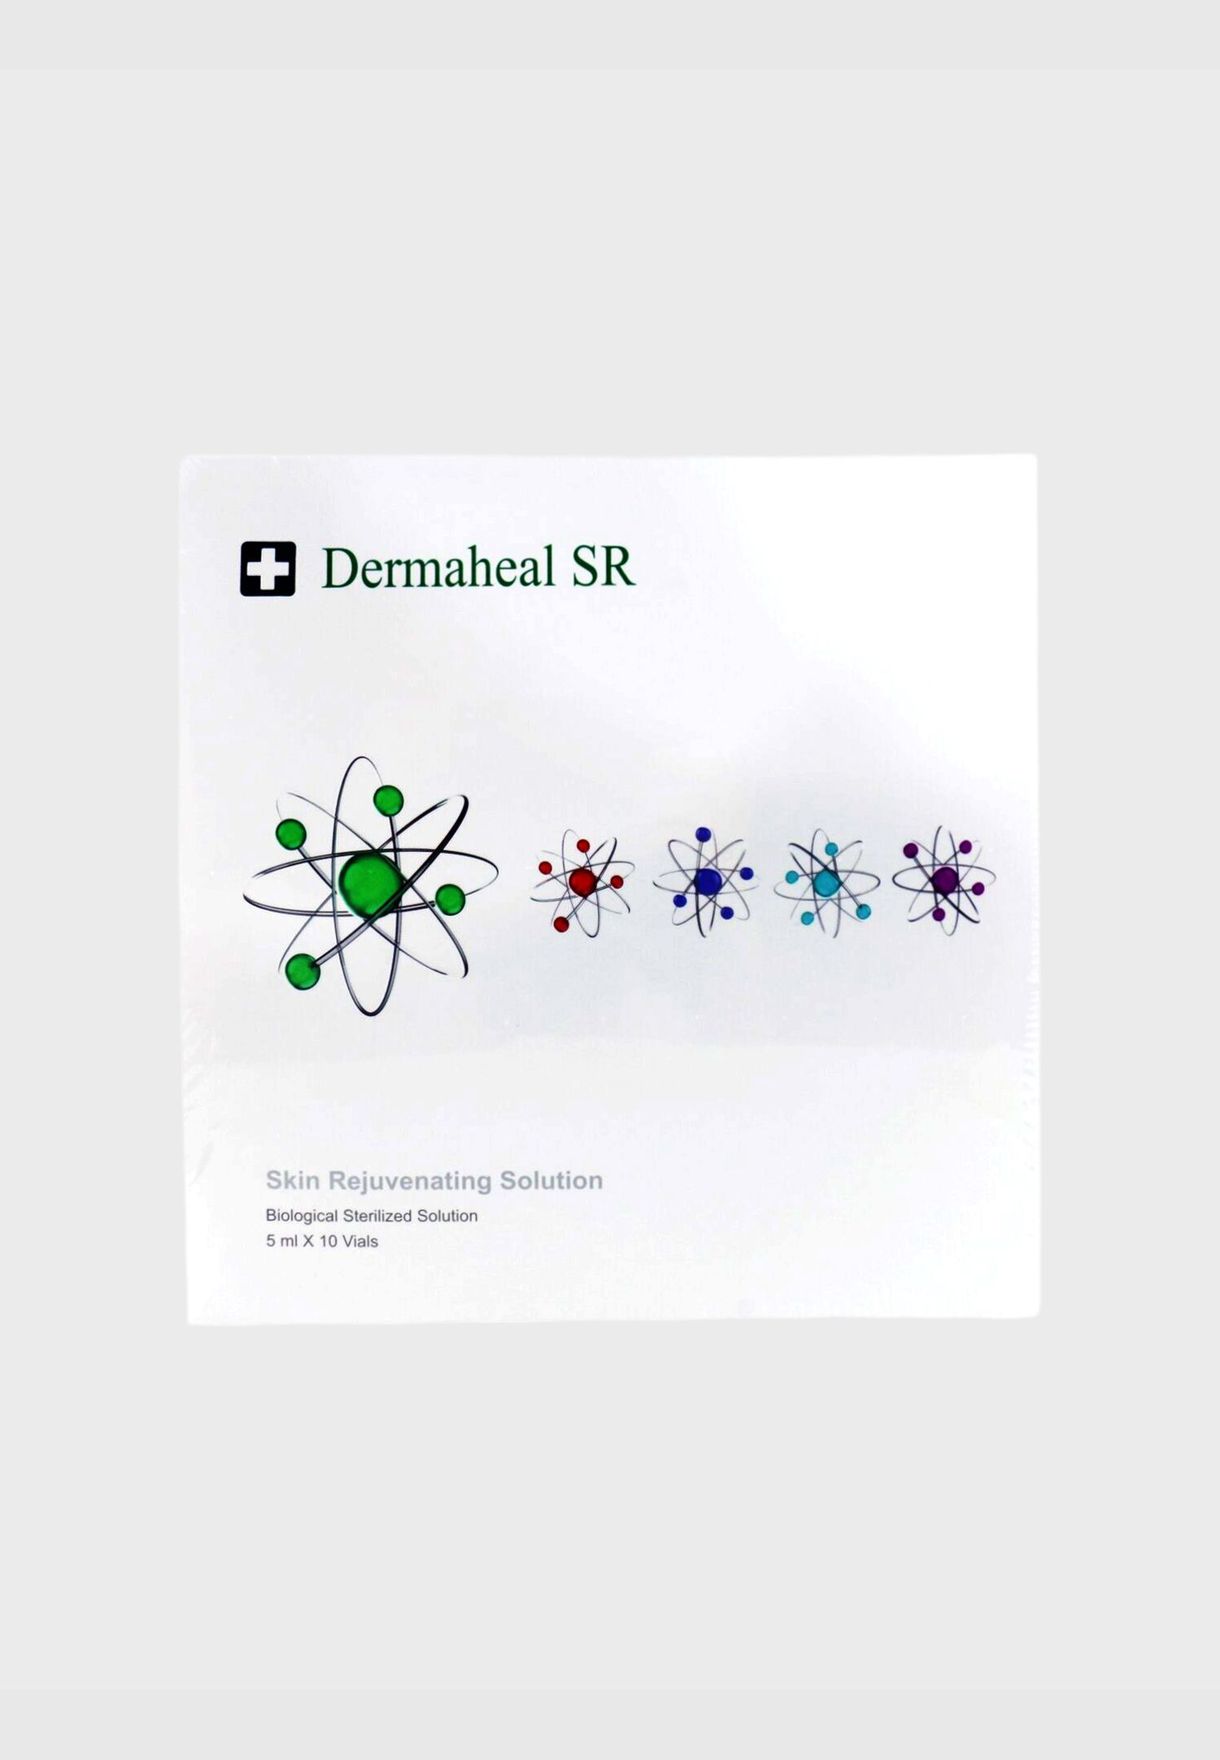 SR - Skin Rejuvenating Solution (Biological Sterilized Solution)